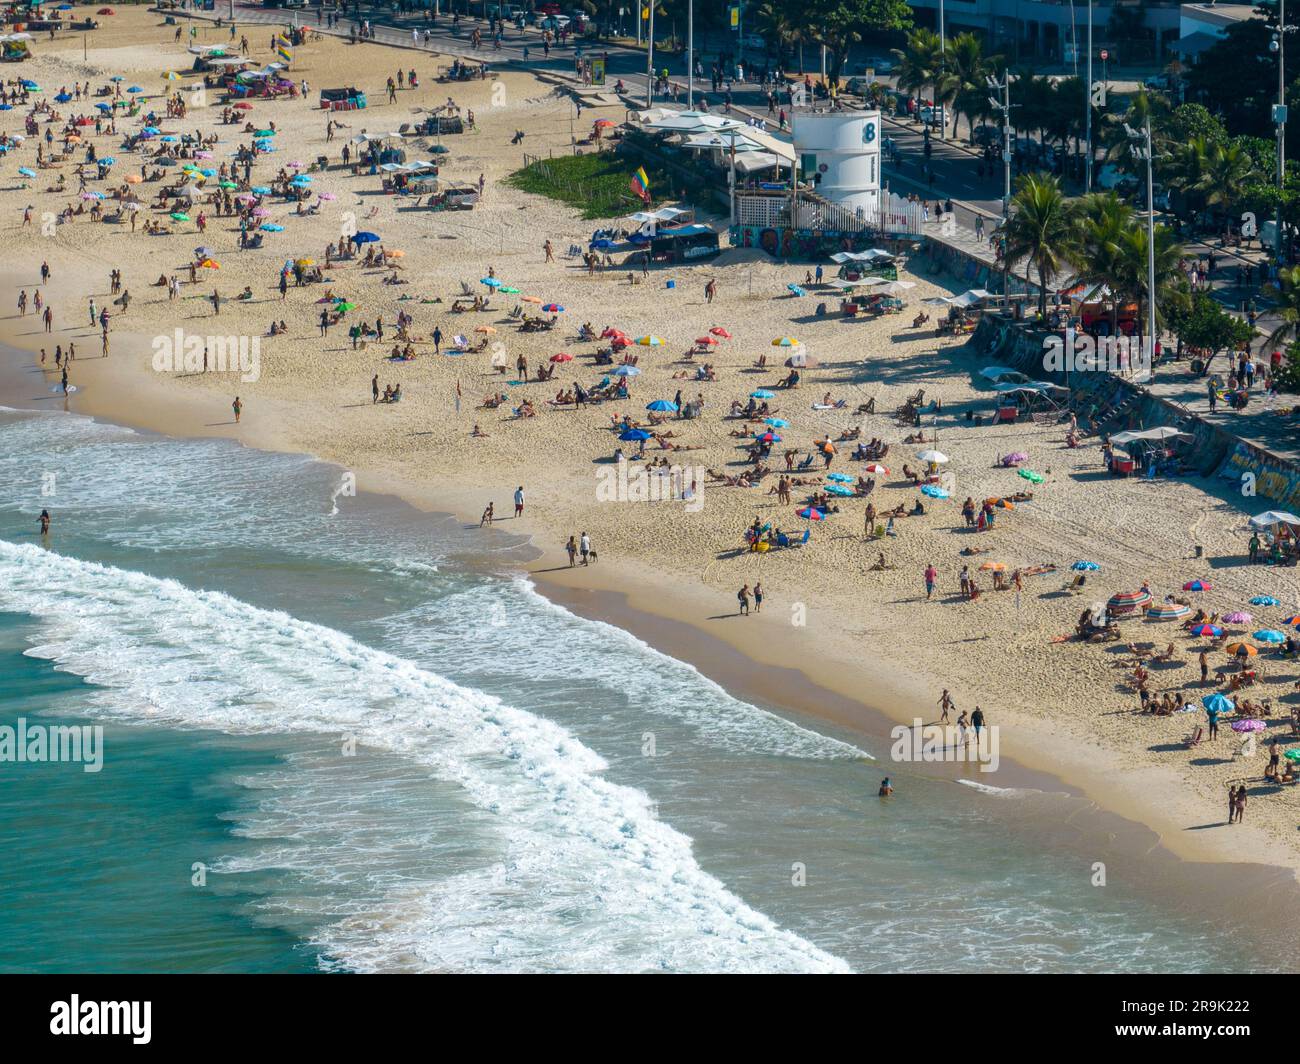 Vista aerea della spiaggia di Ipanema. Persone che prendono il sole e giocano sulla spiaggia, sport di mare. Rio de Janeiro. Brasile Foto Stock